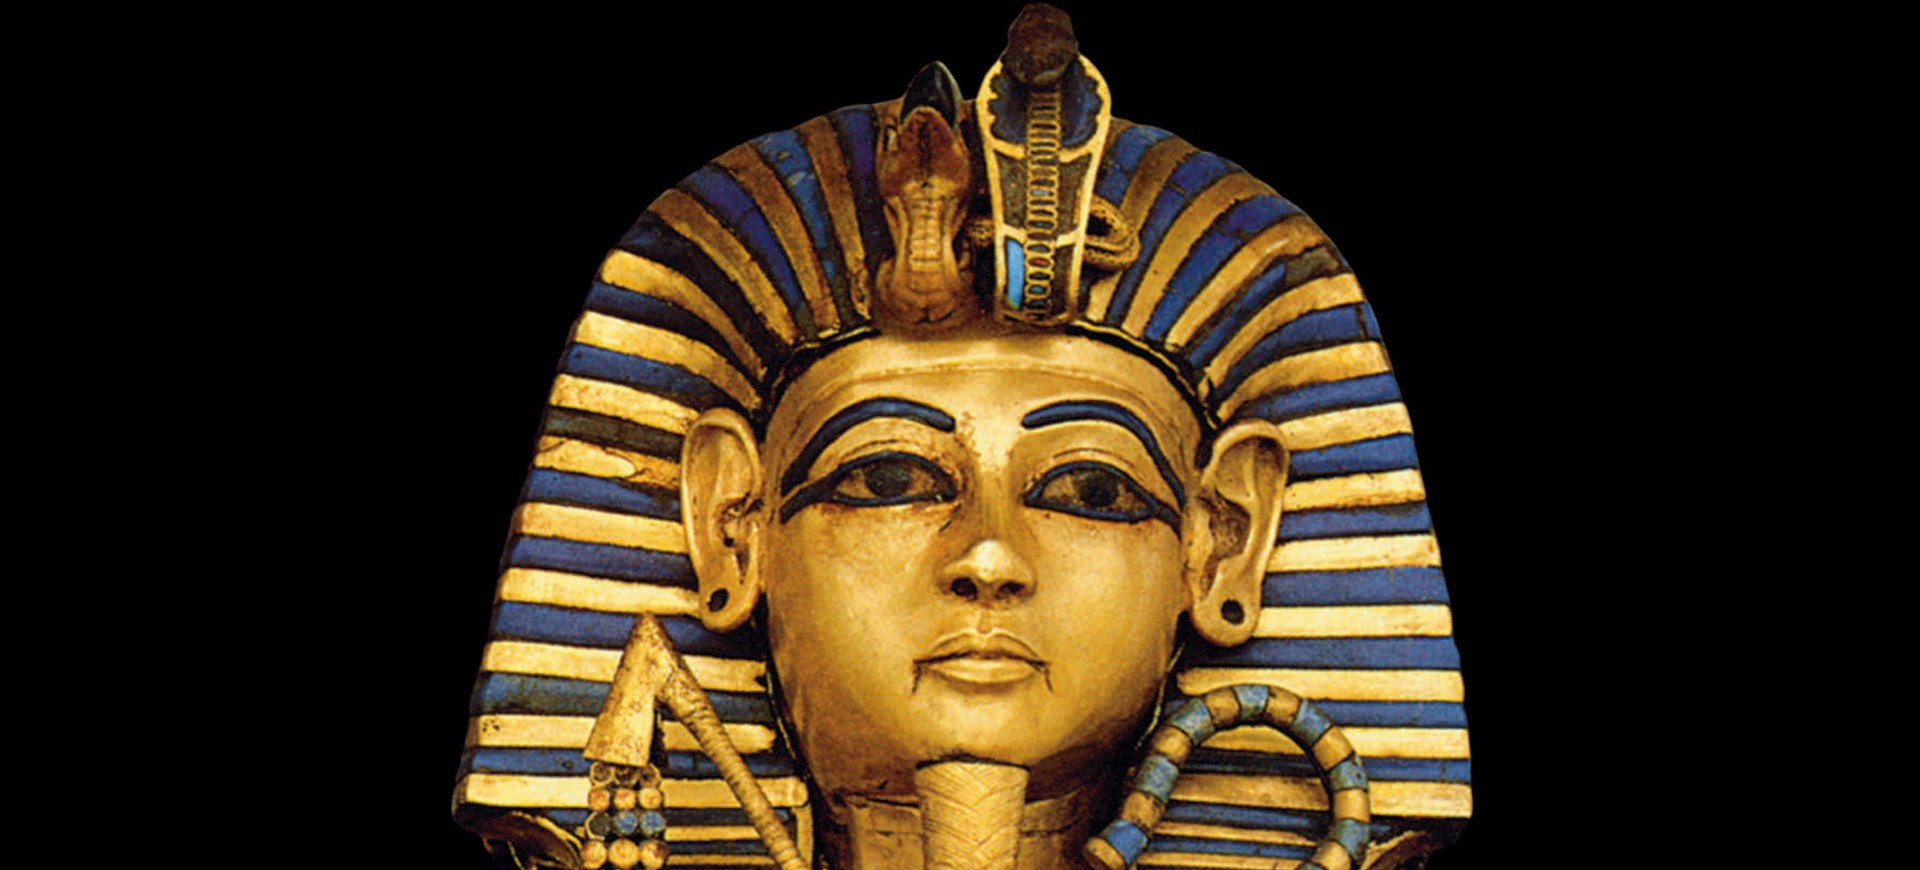 Egypte Le Caire Musée Statue Toutakamon